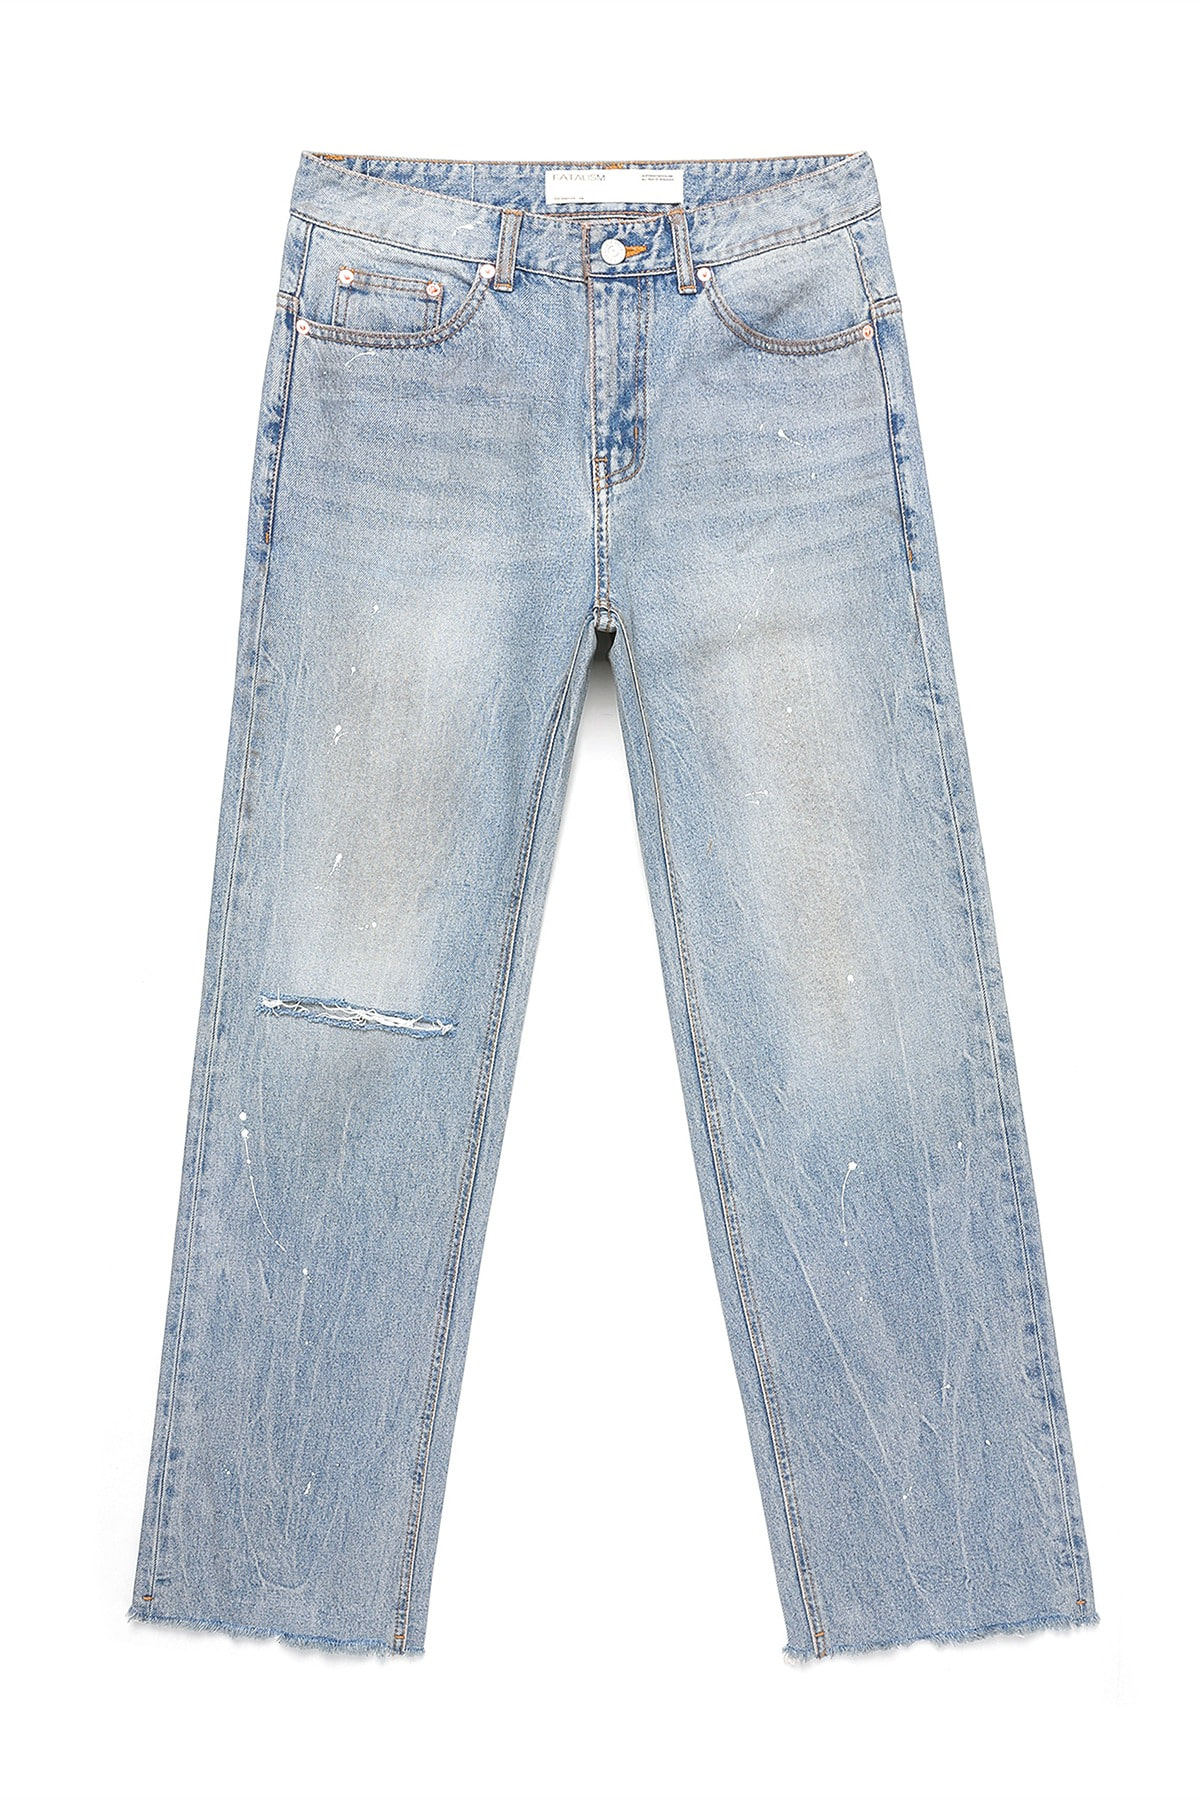 [8/25 예약발송] #0237 trabus paint jeans